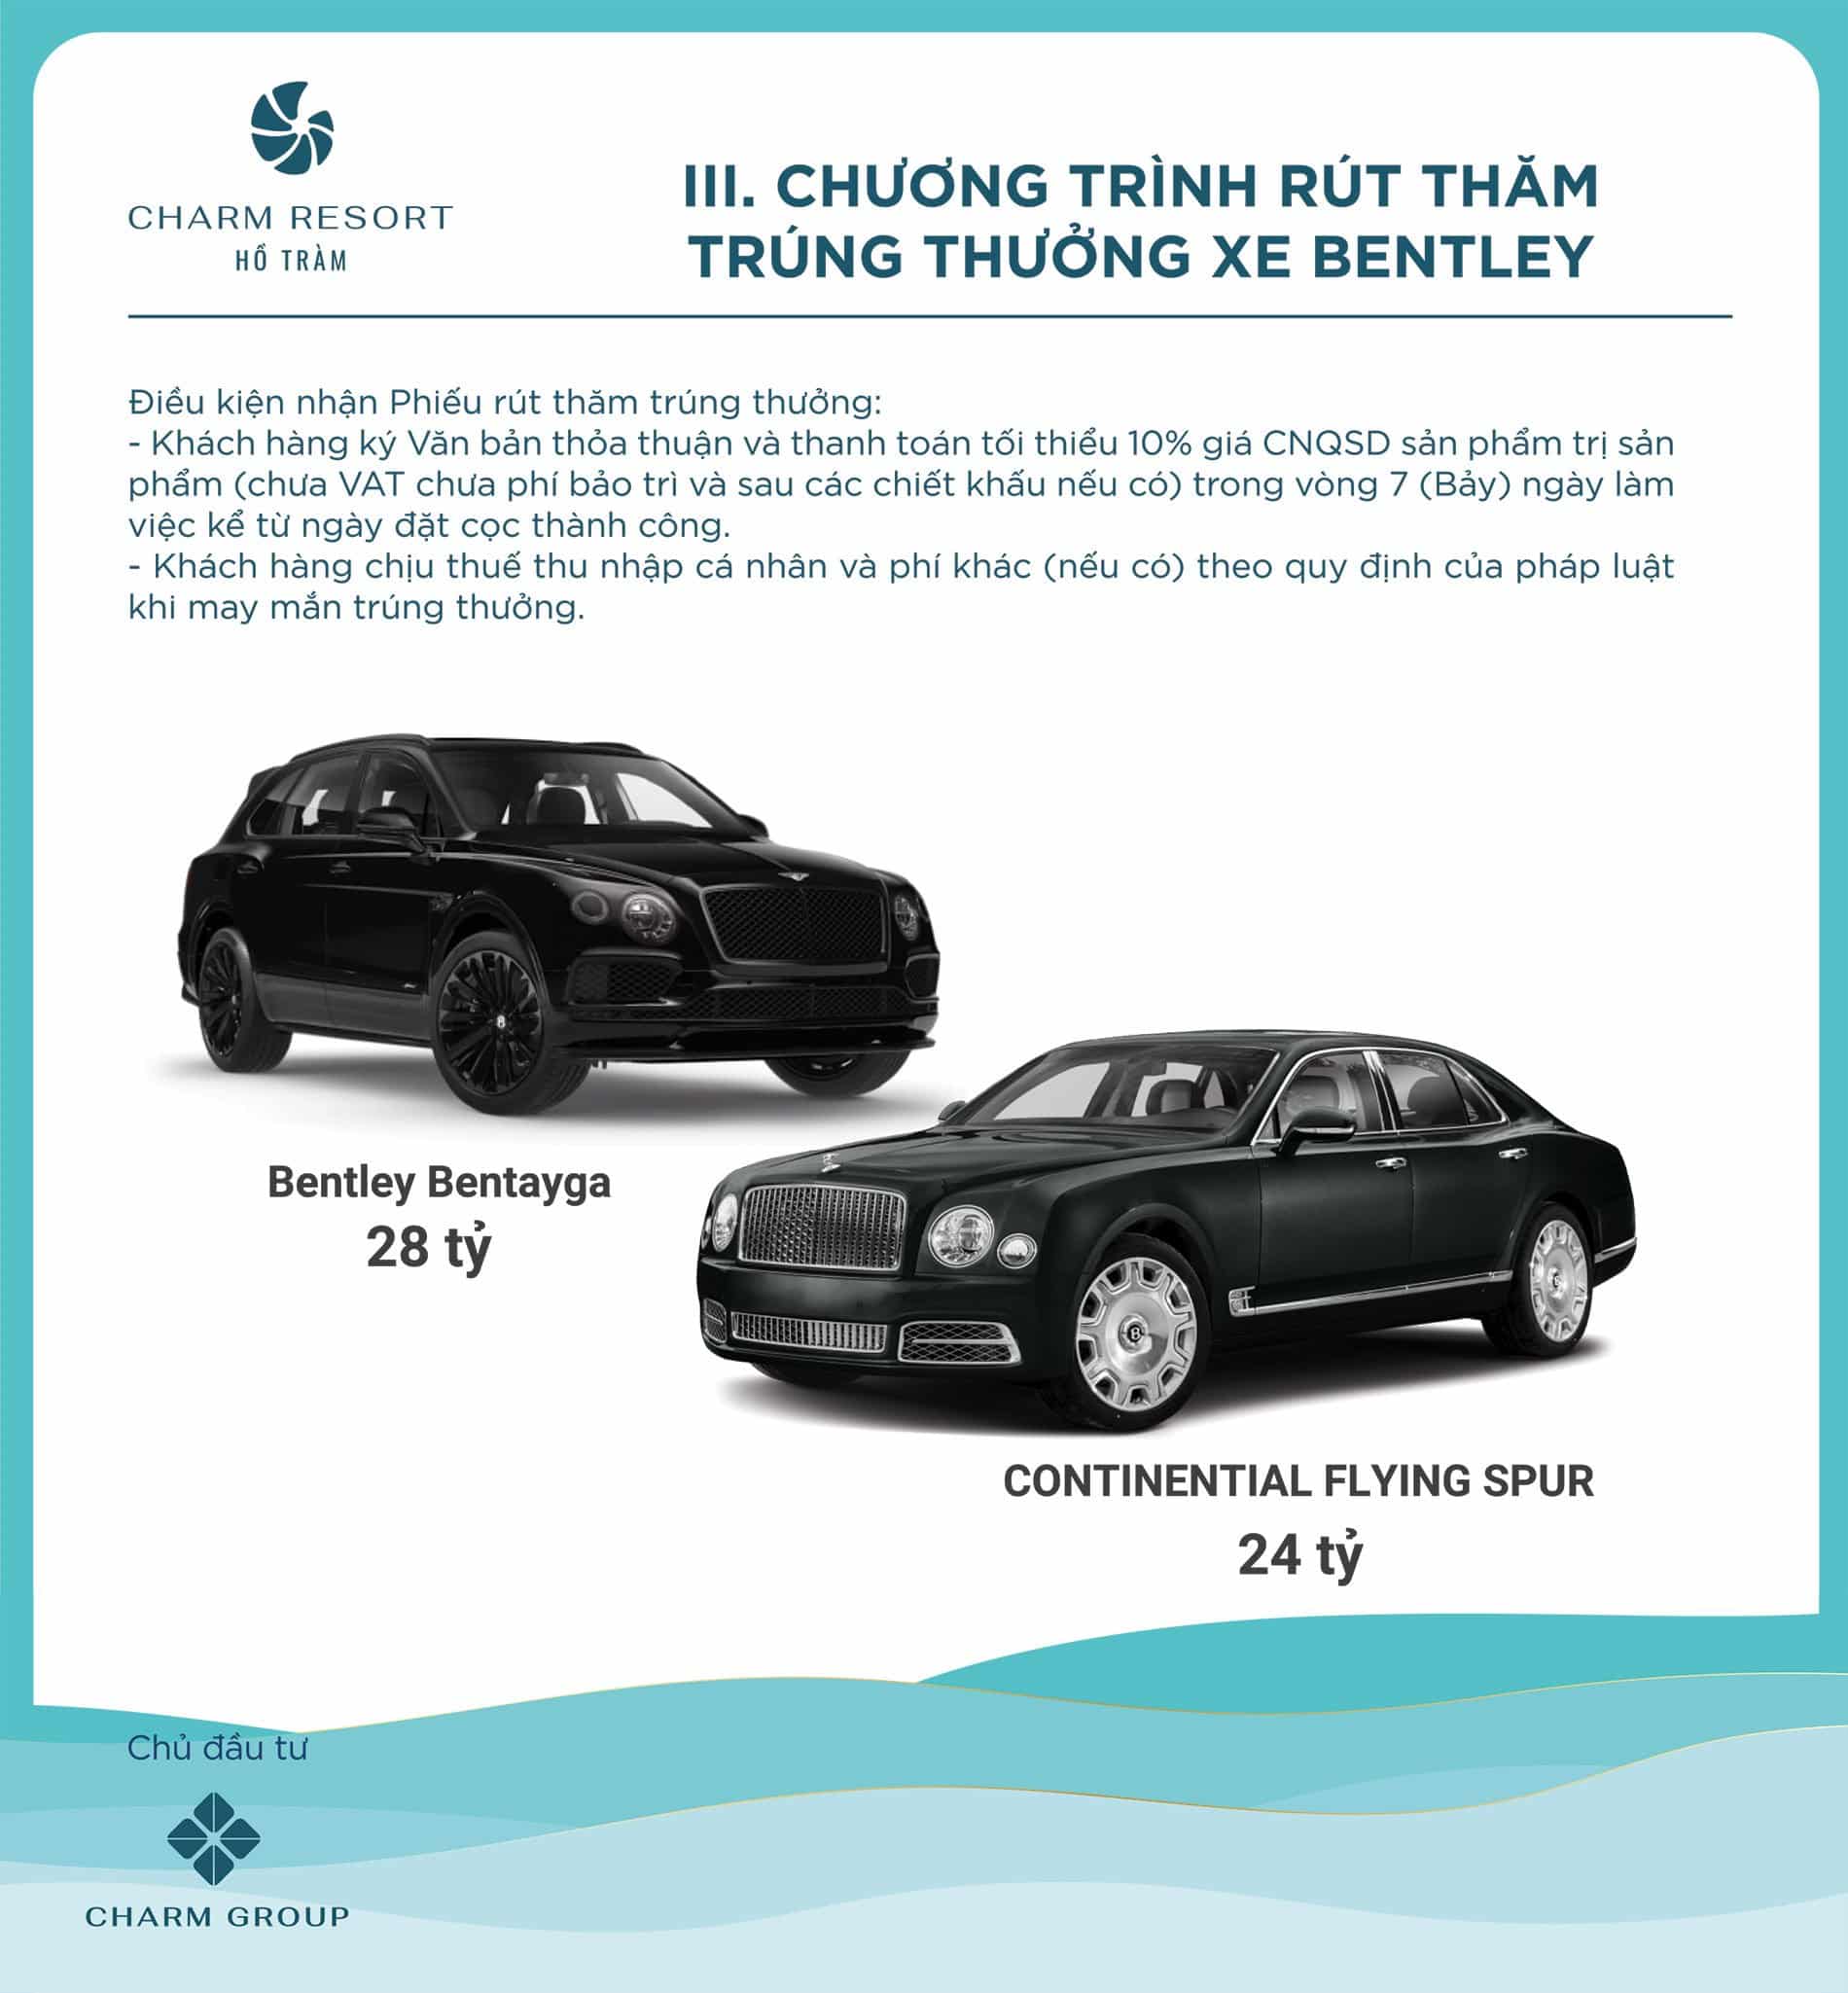 Chương trình rút thăm trúng thưởng xe Bentley khi mua Charm Resort Hồ Tràm.